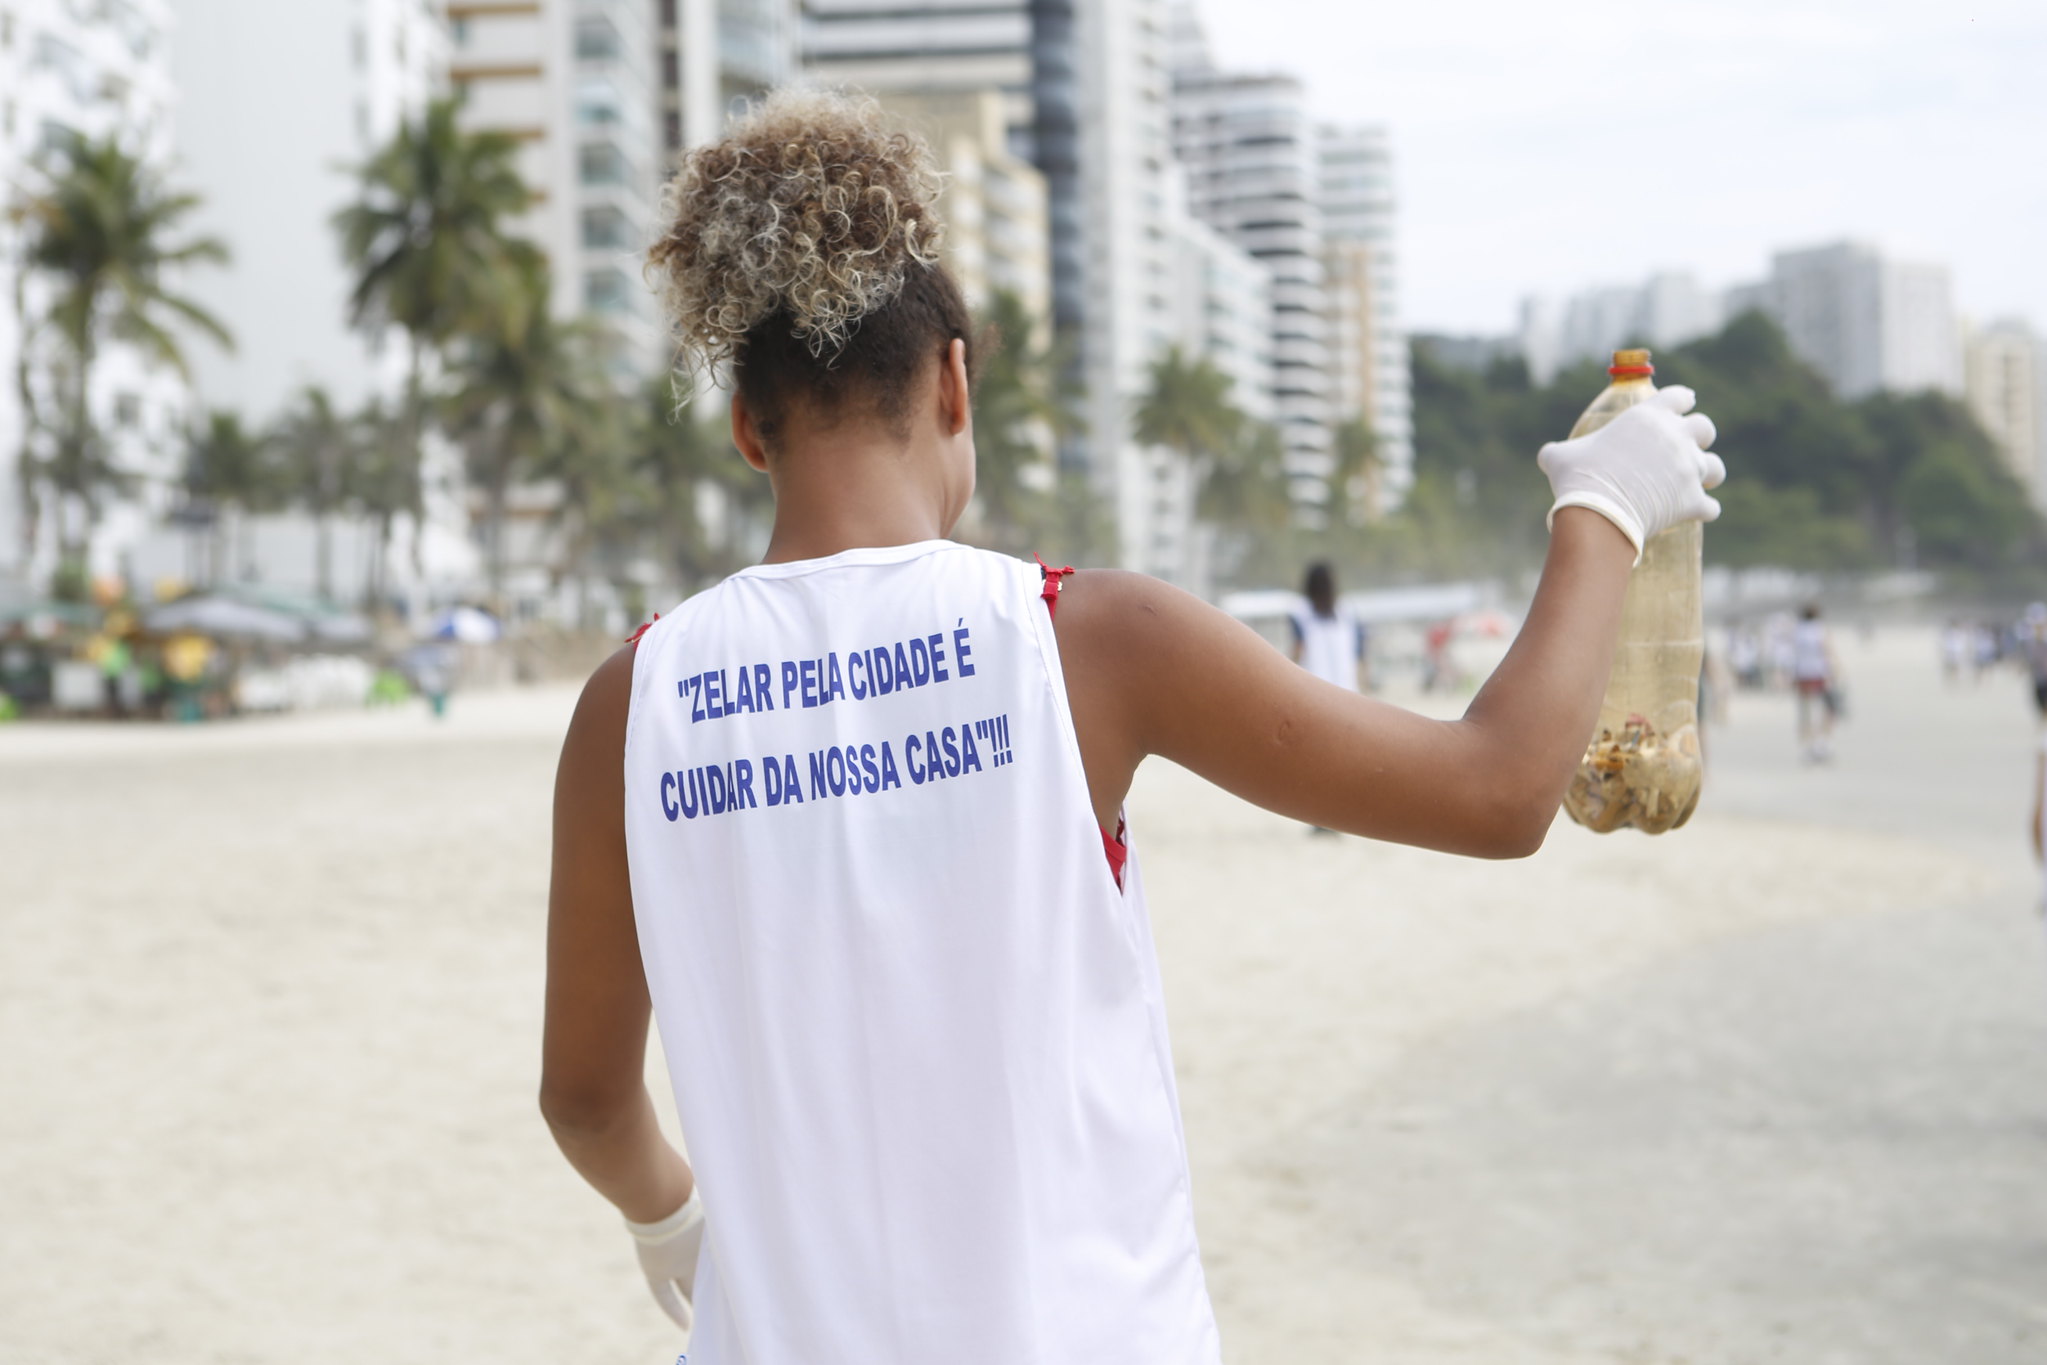 Guarujá promove mutirão de limpeza na Praia das Astúrias neste domingo 